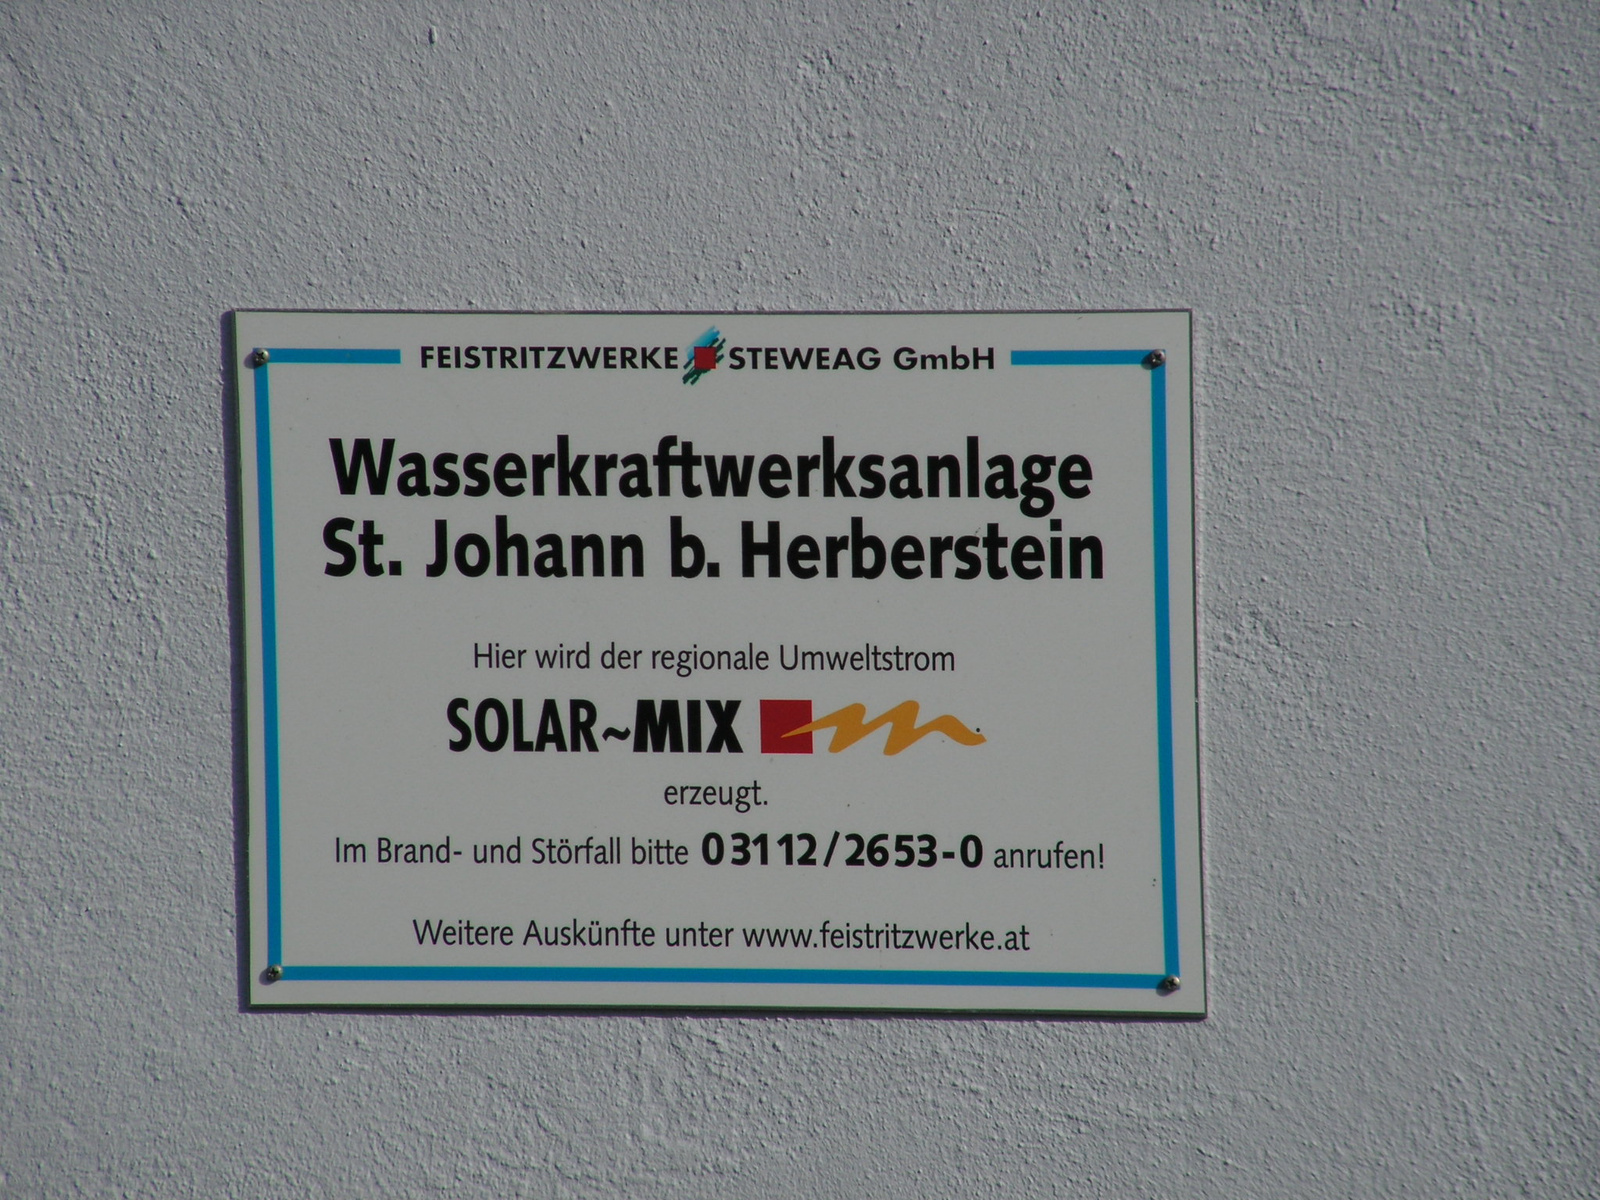 St. Johann bei Herberstein, vízi erőmű a Feistritzen,